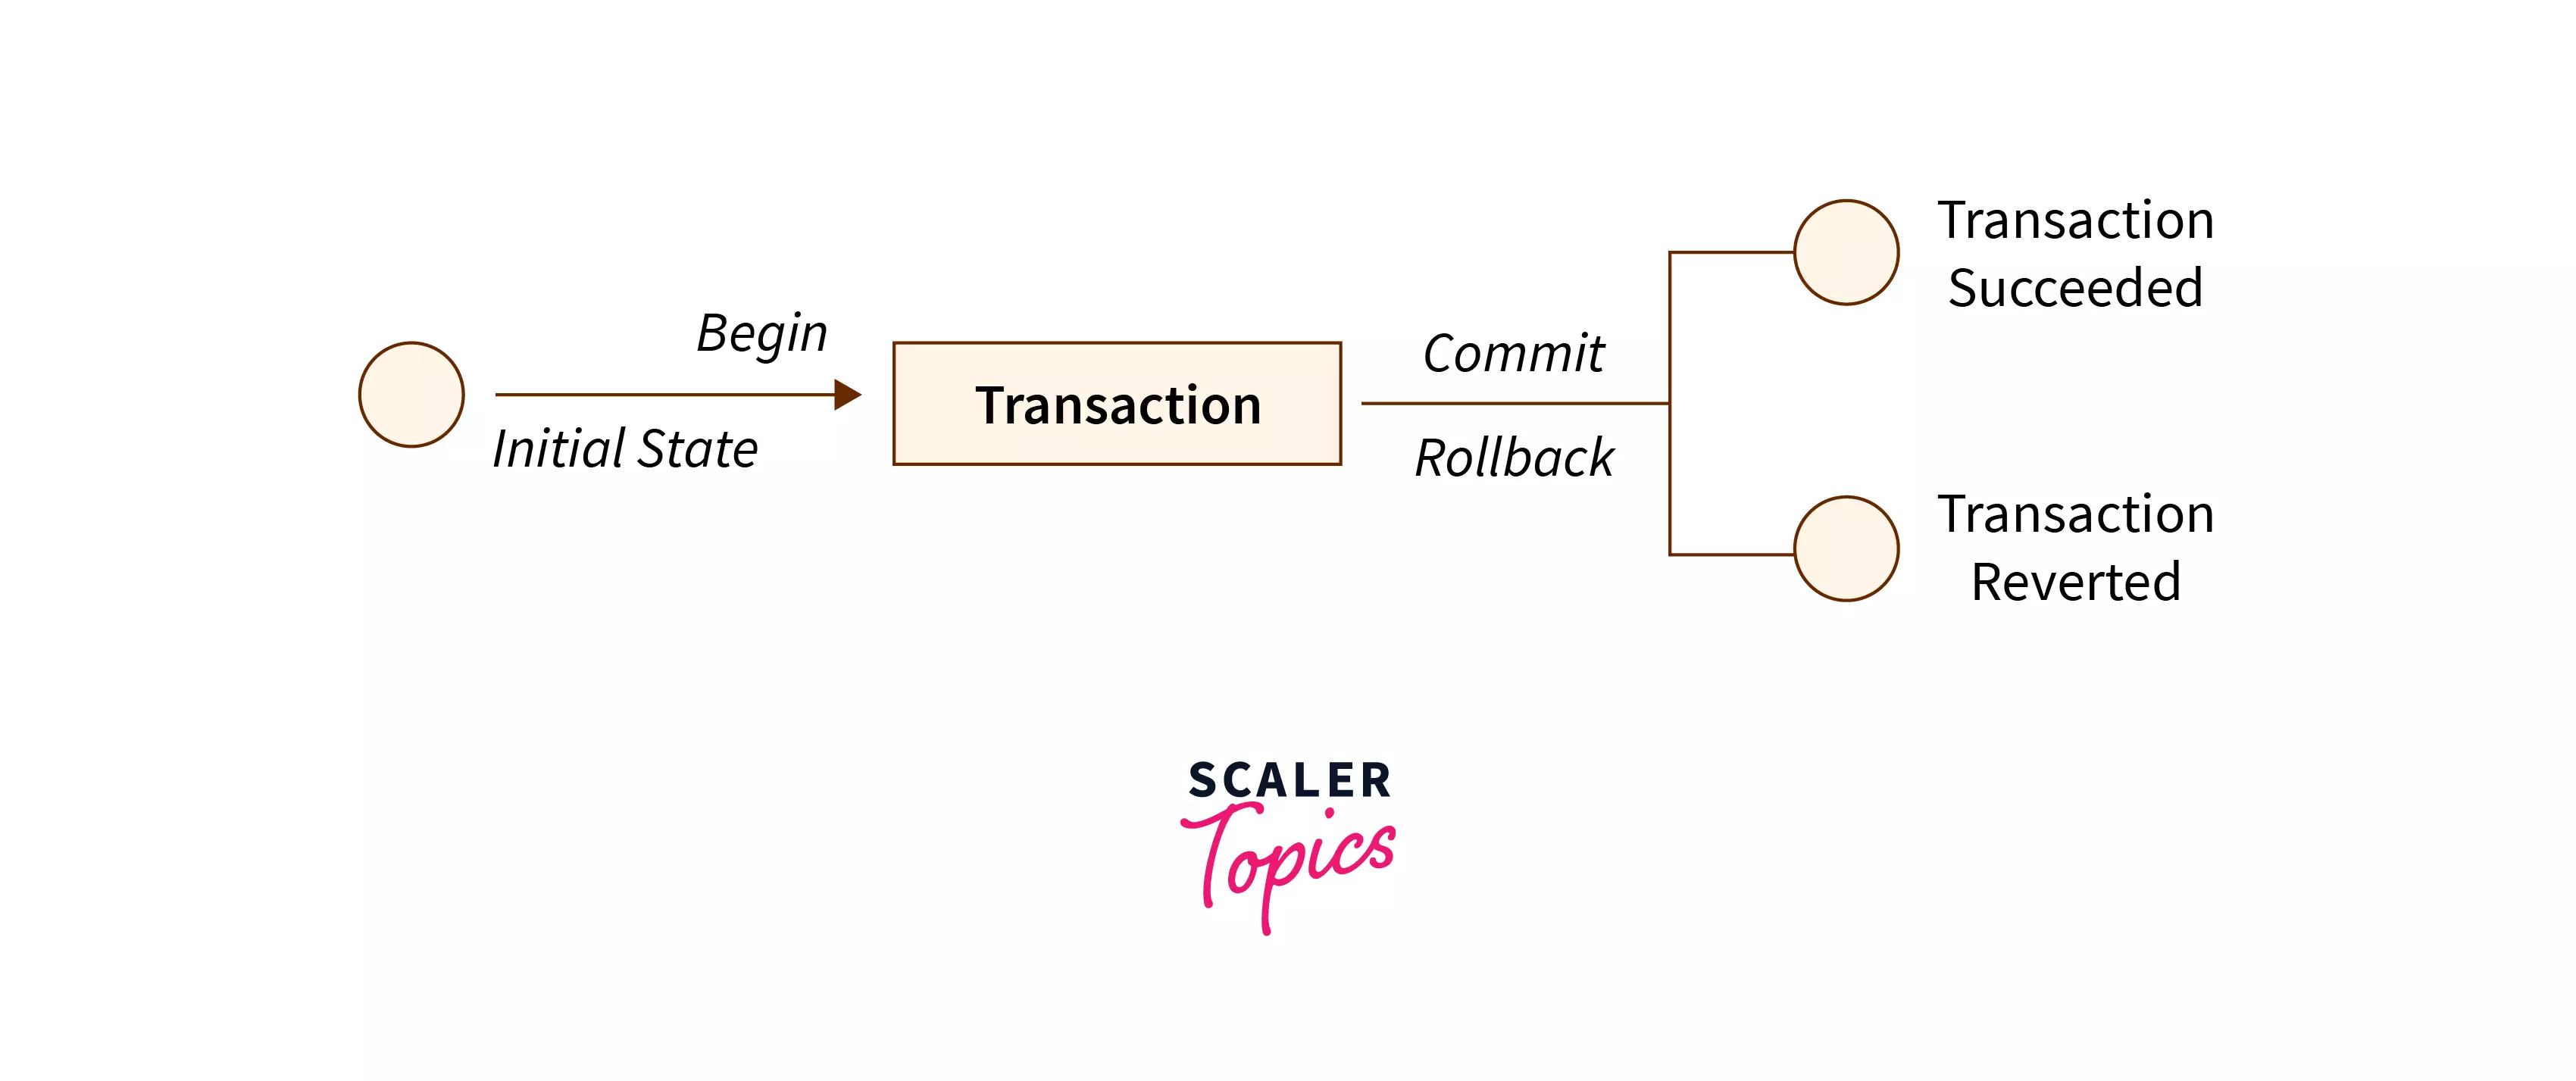 Transactions in SQL